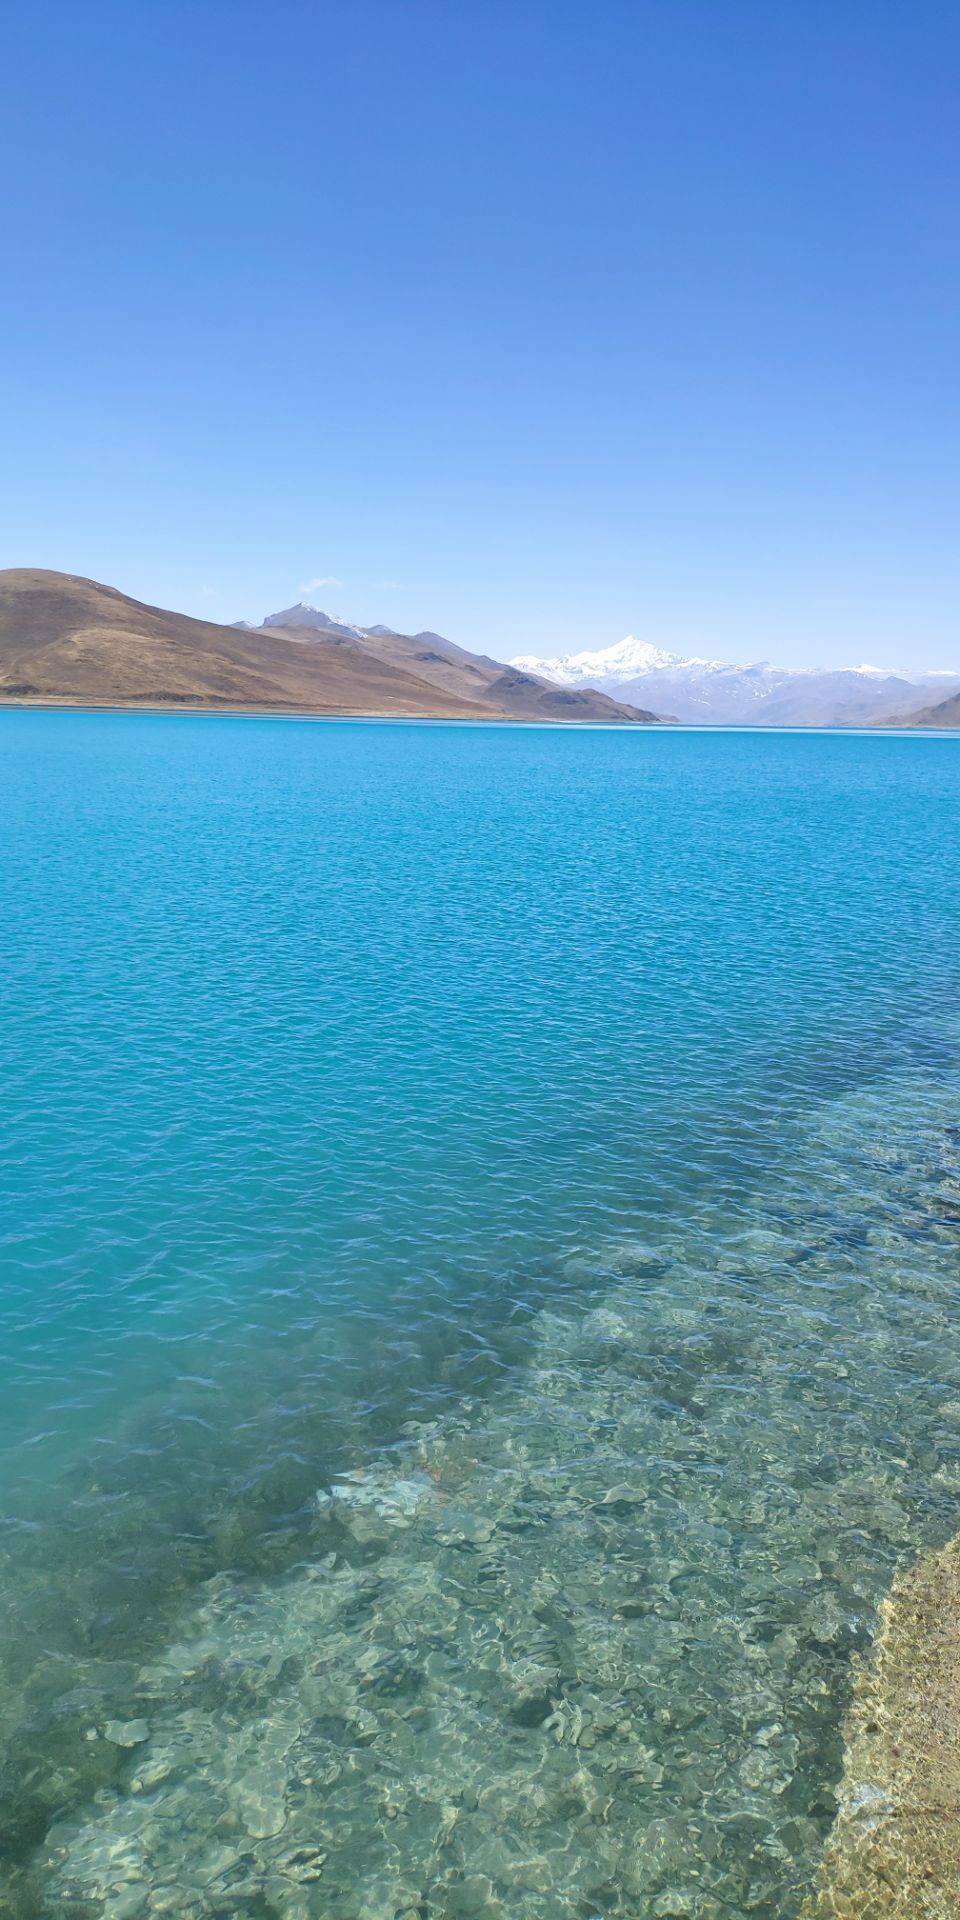 羊卓雍措藏语意为"碧玉湖",是西藏三大圣湖之一,像珊瑚枝一般,因此它